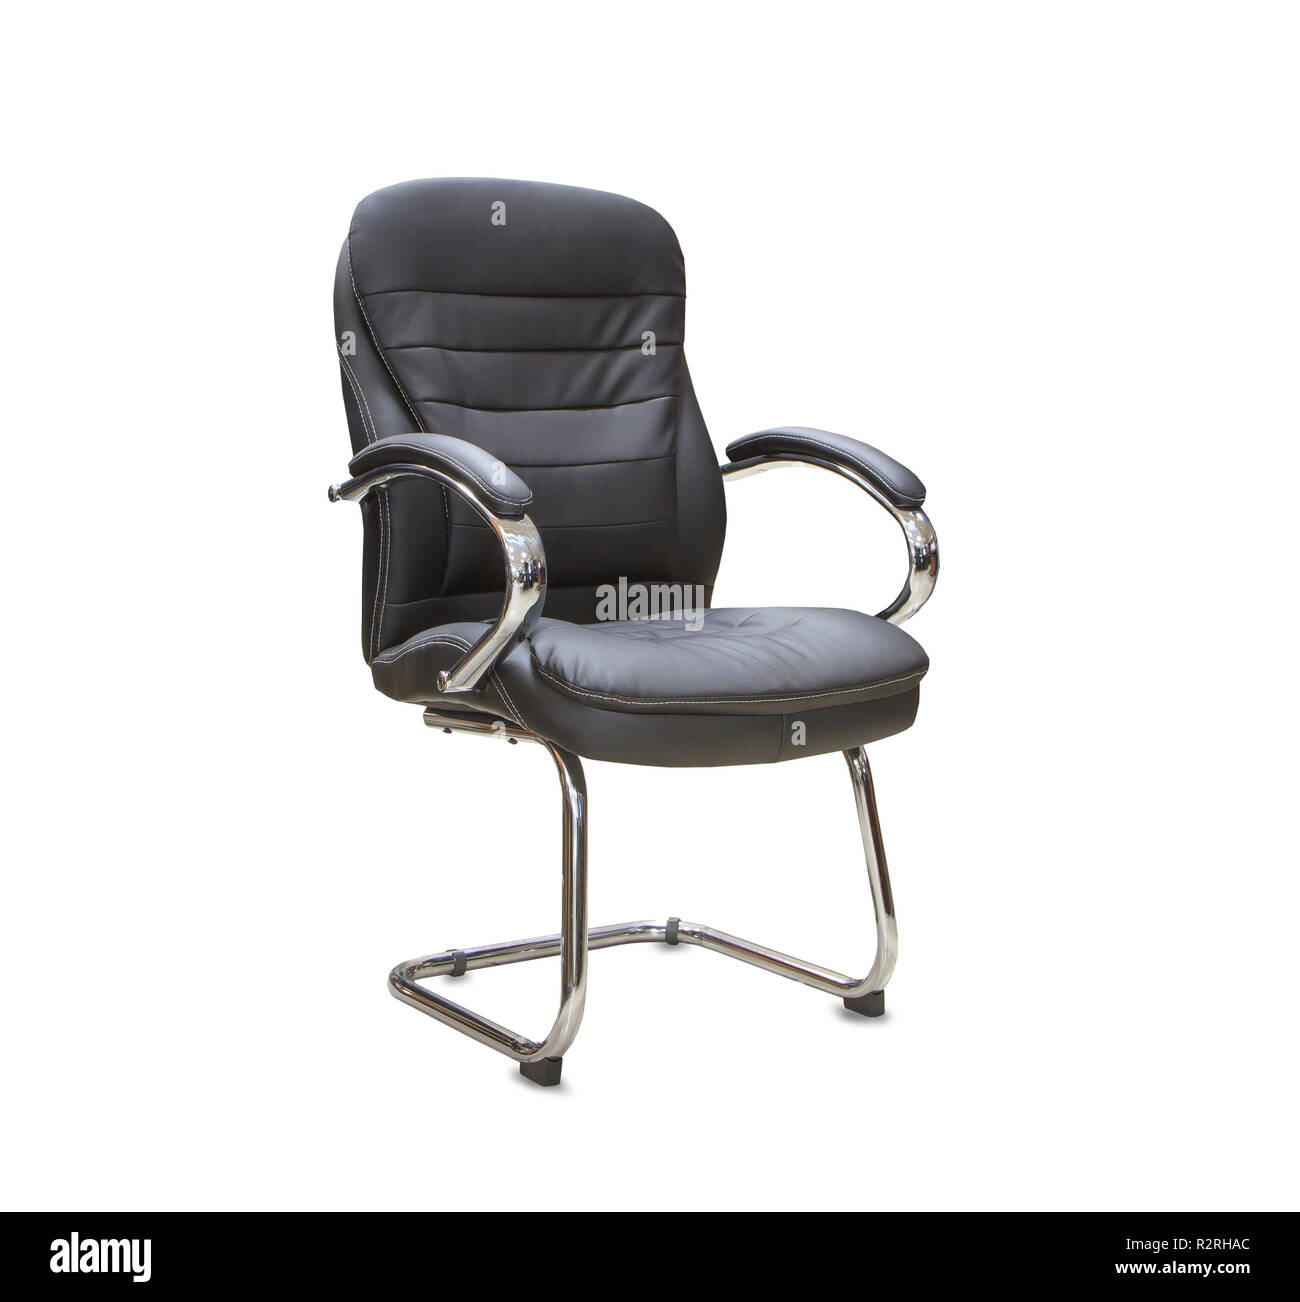 La chaise de bureau de cuir noir. Isolé Banque D'Images